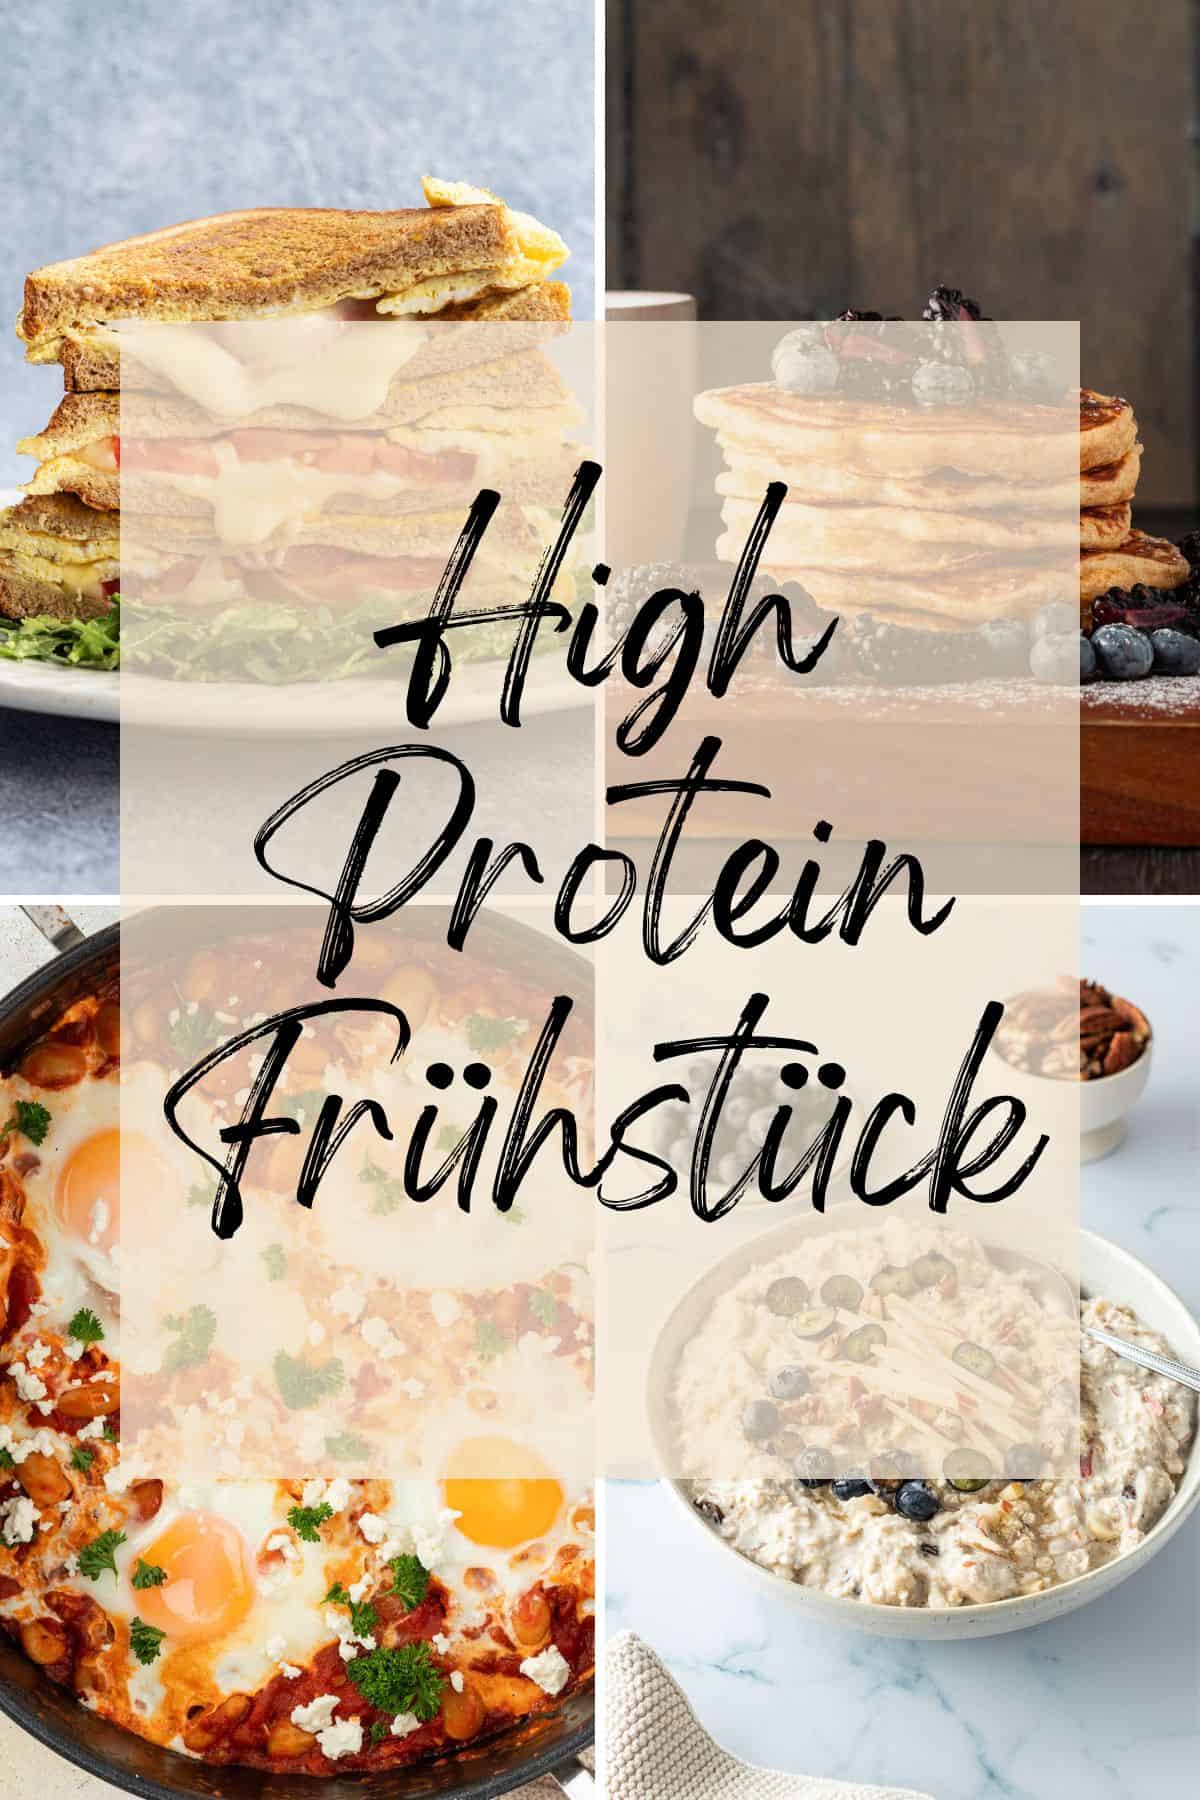 Collage aus vier Bildern von unterschiedlichen Frühstücksgerichten mit dem Textzug "High Protein Frühstück".